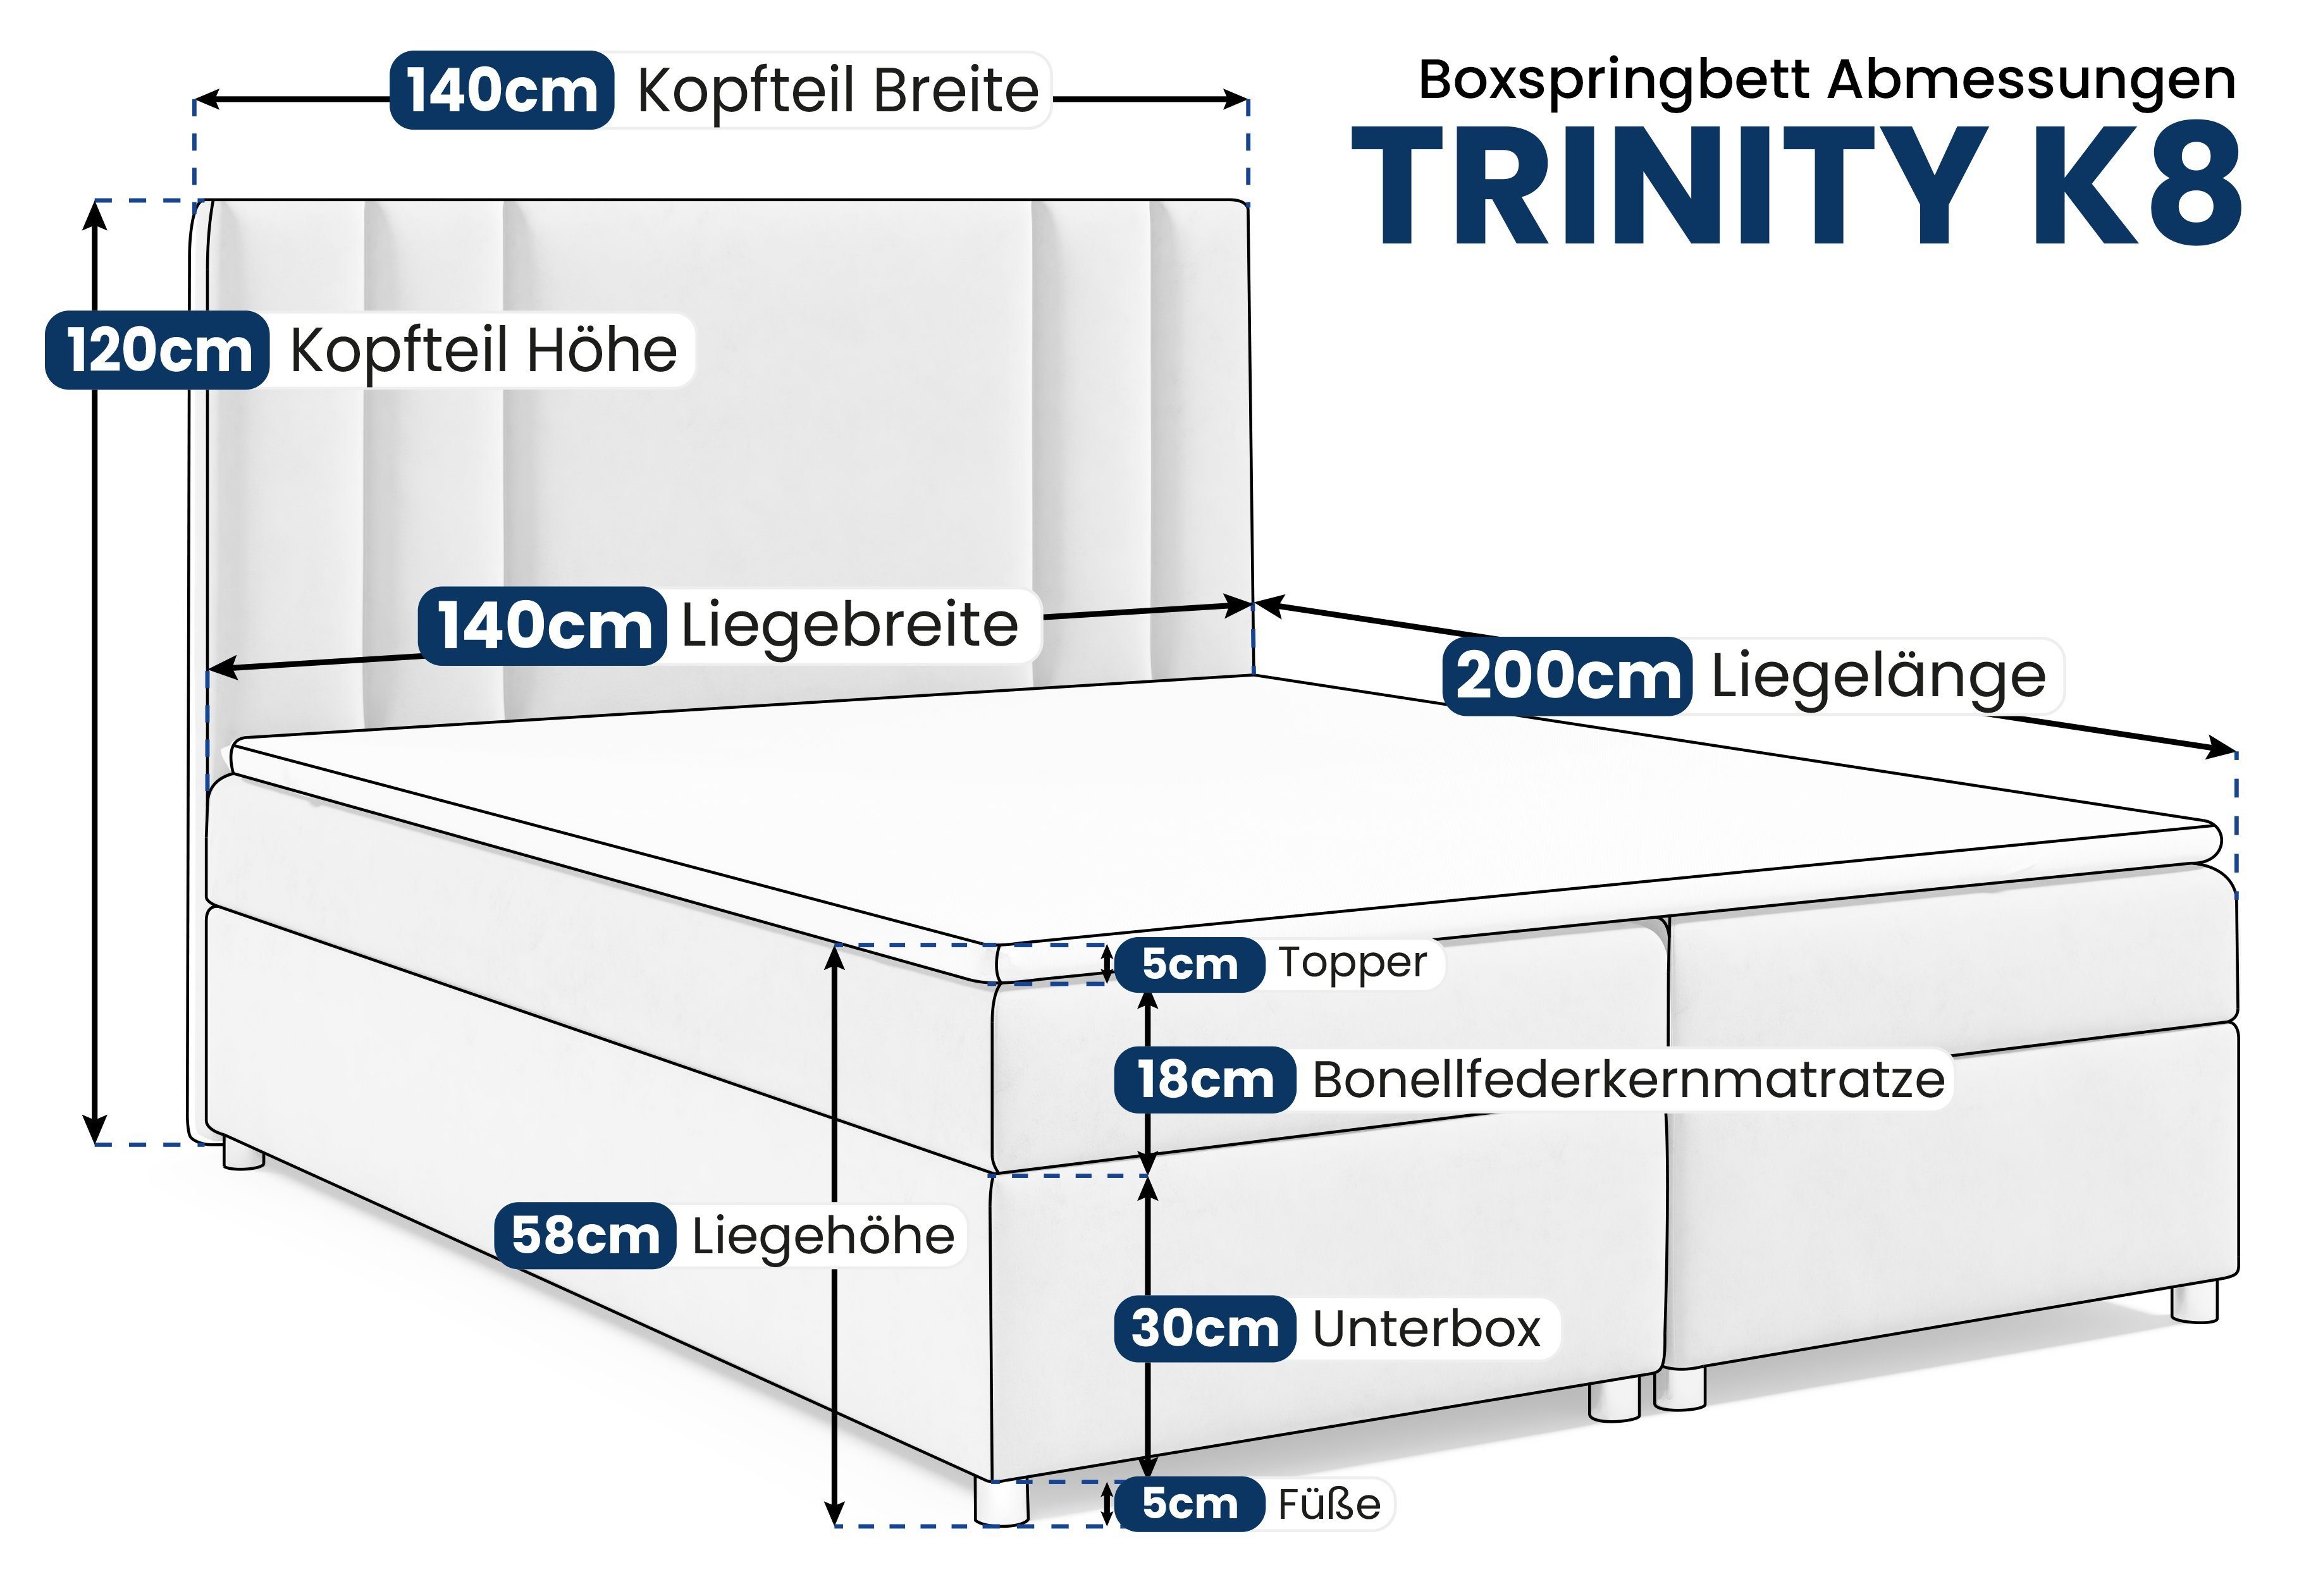 Best Boxspringbett Mintgrün for Trinity und Topper Bettkasten mit K8, Home